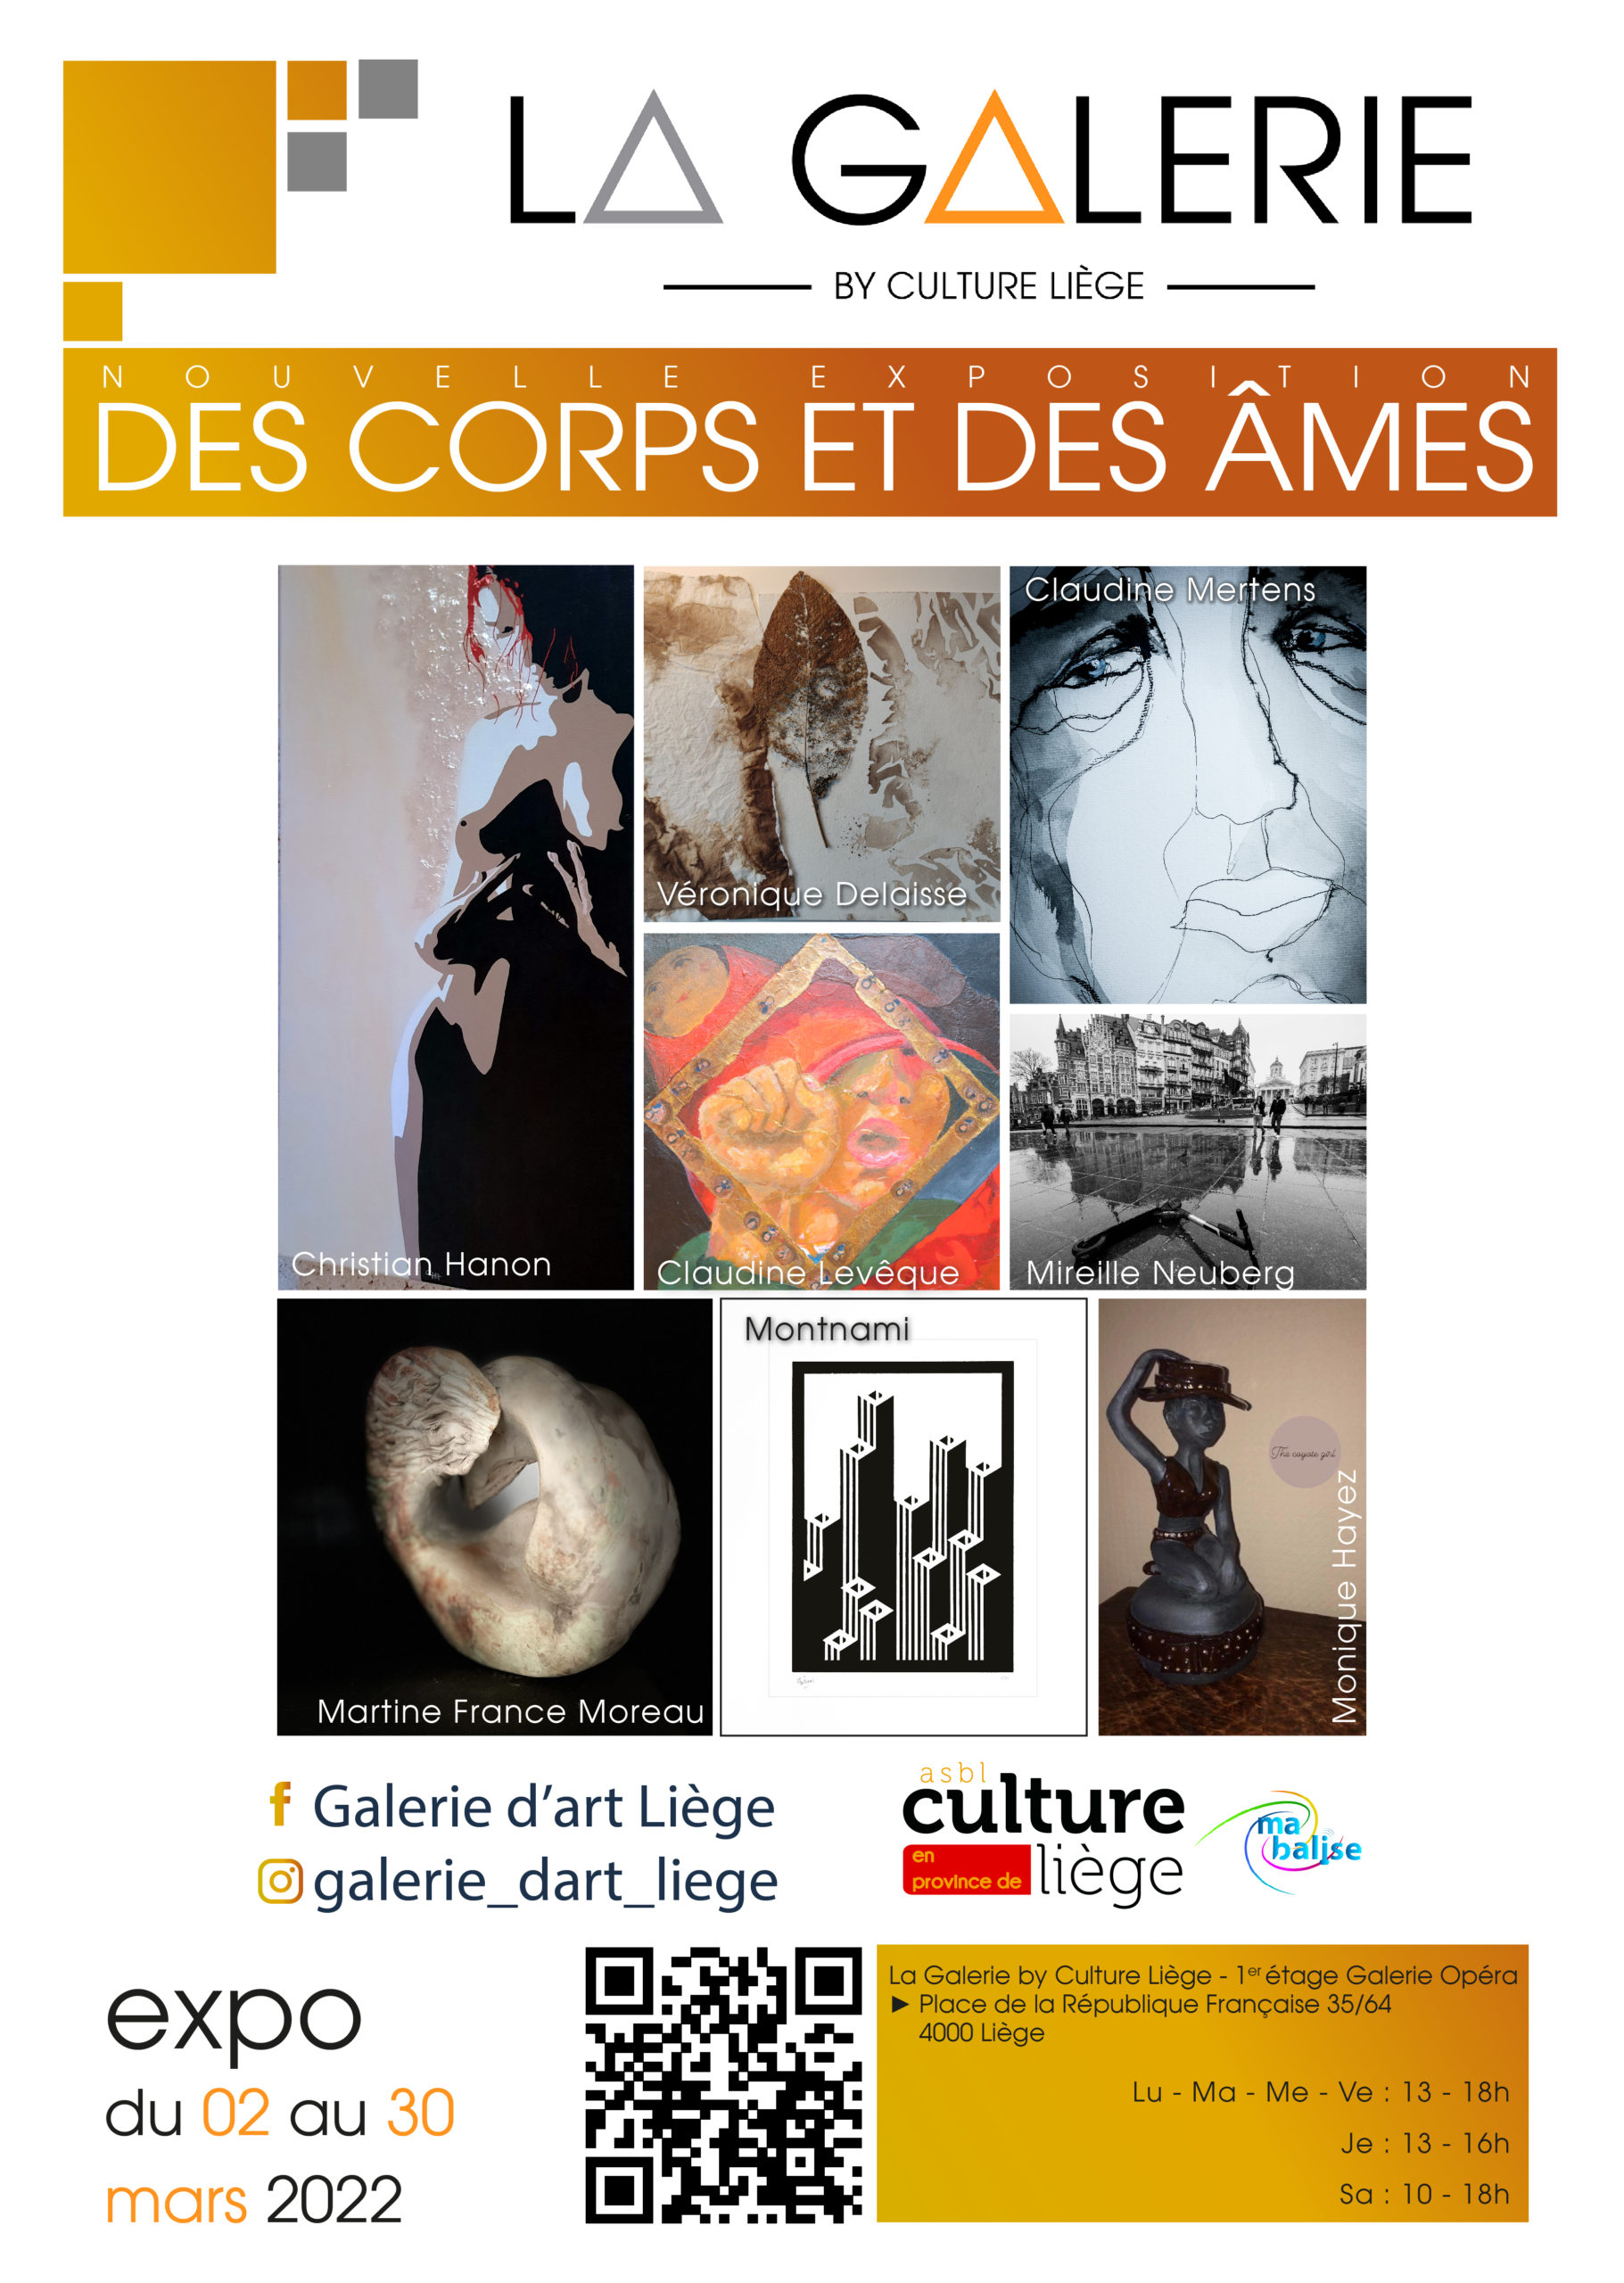 Exposition "Des corps & des âmes" à la Galerie by culture Liège